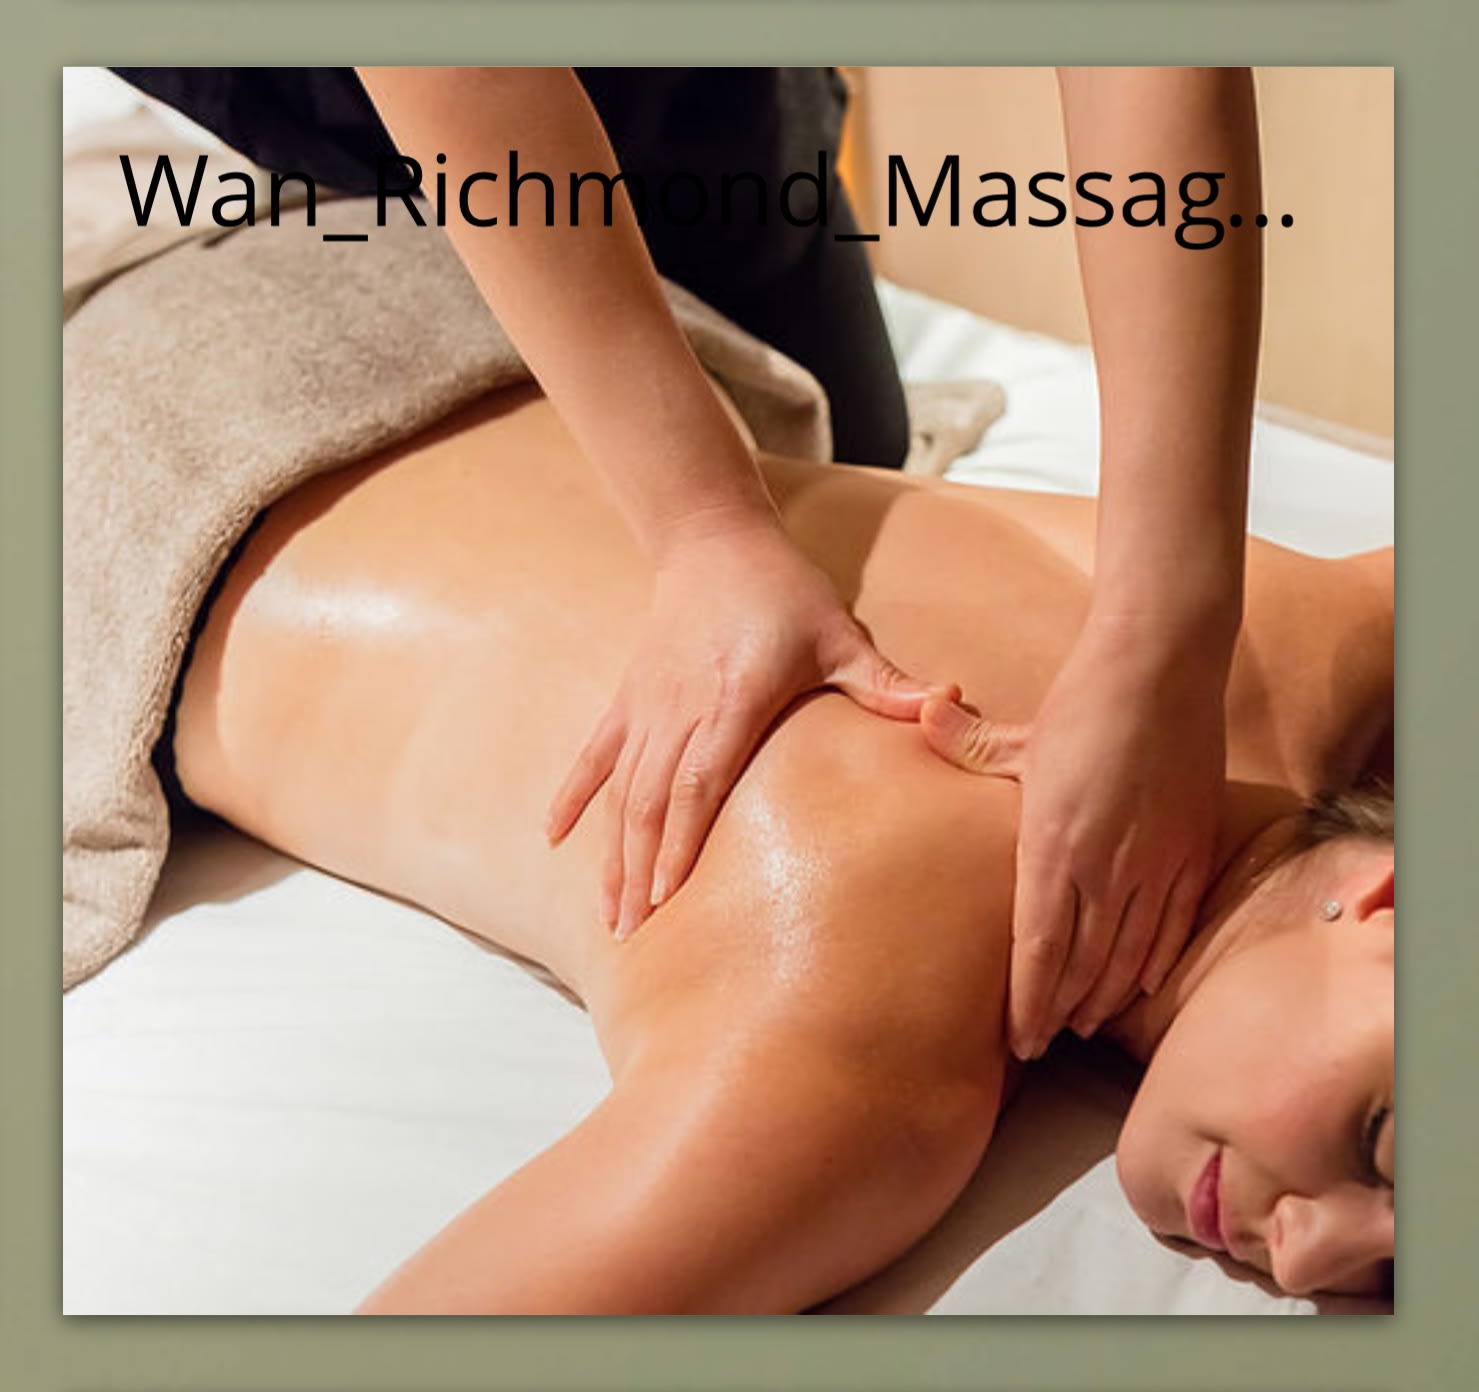 Images Wan Richmond Massage